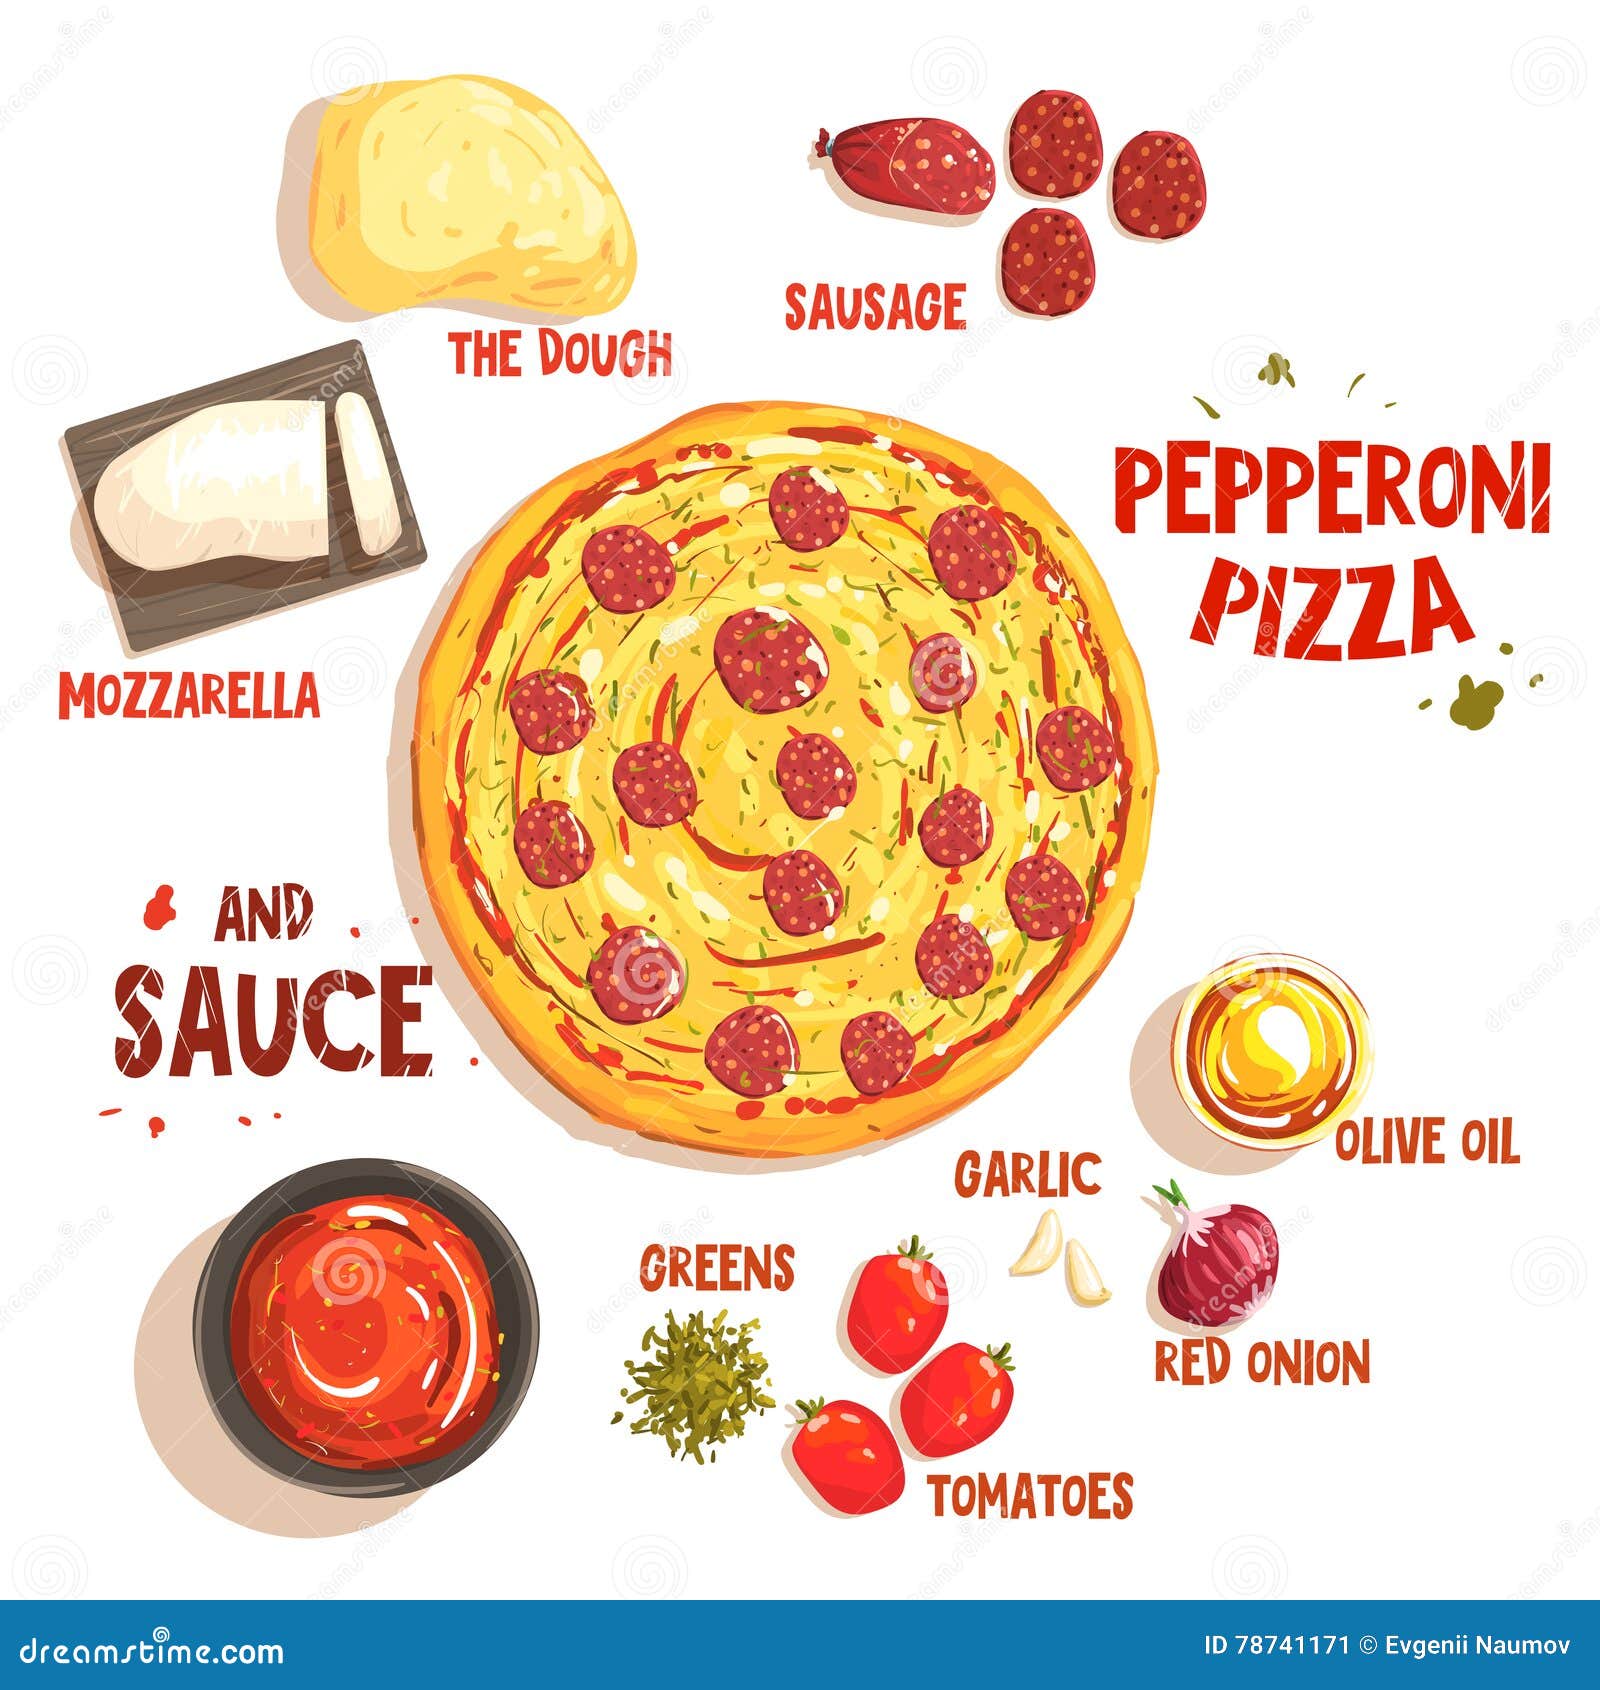 технологическая карта пепперони пицца фото 94